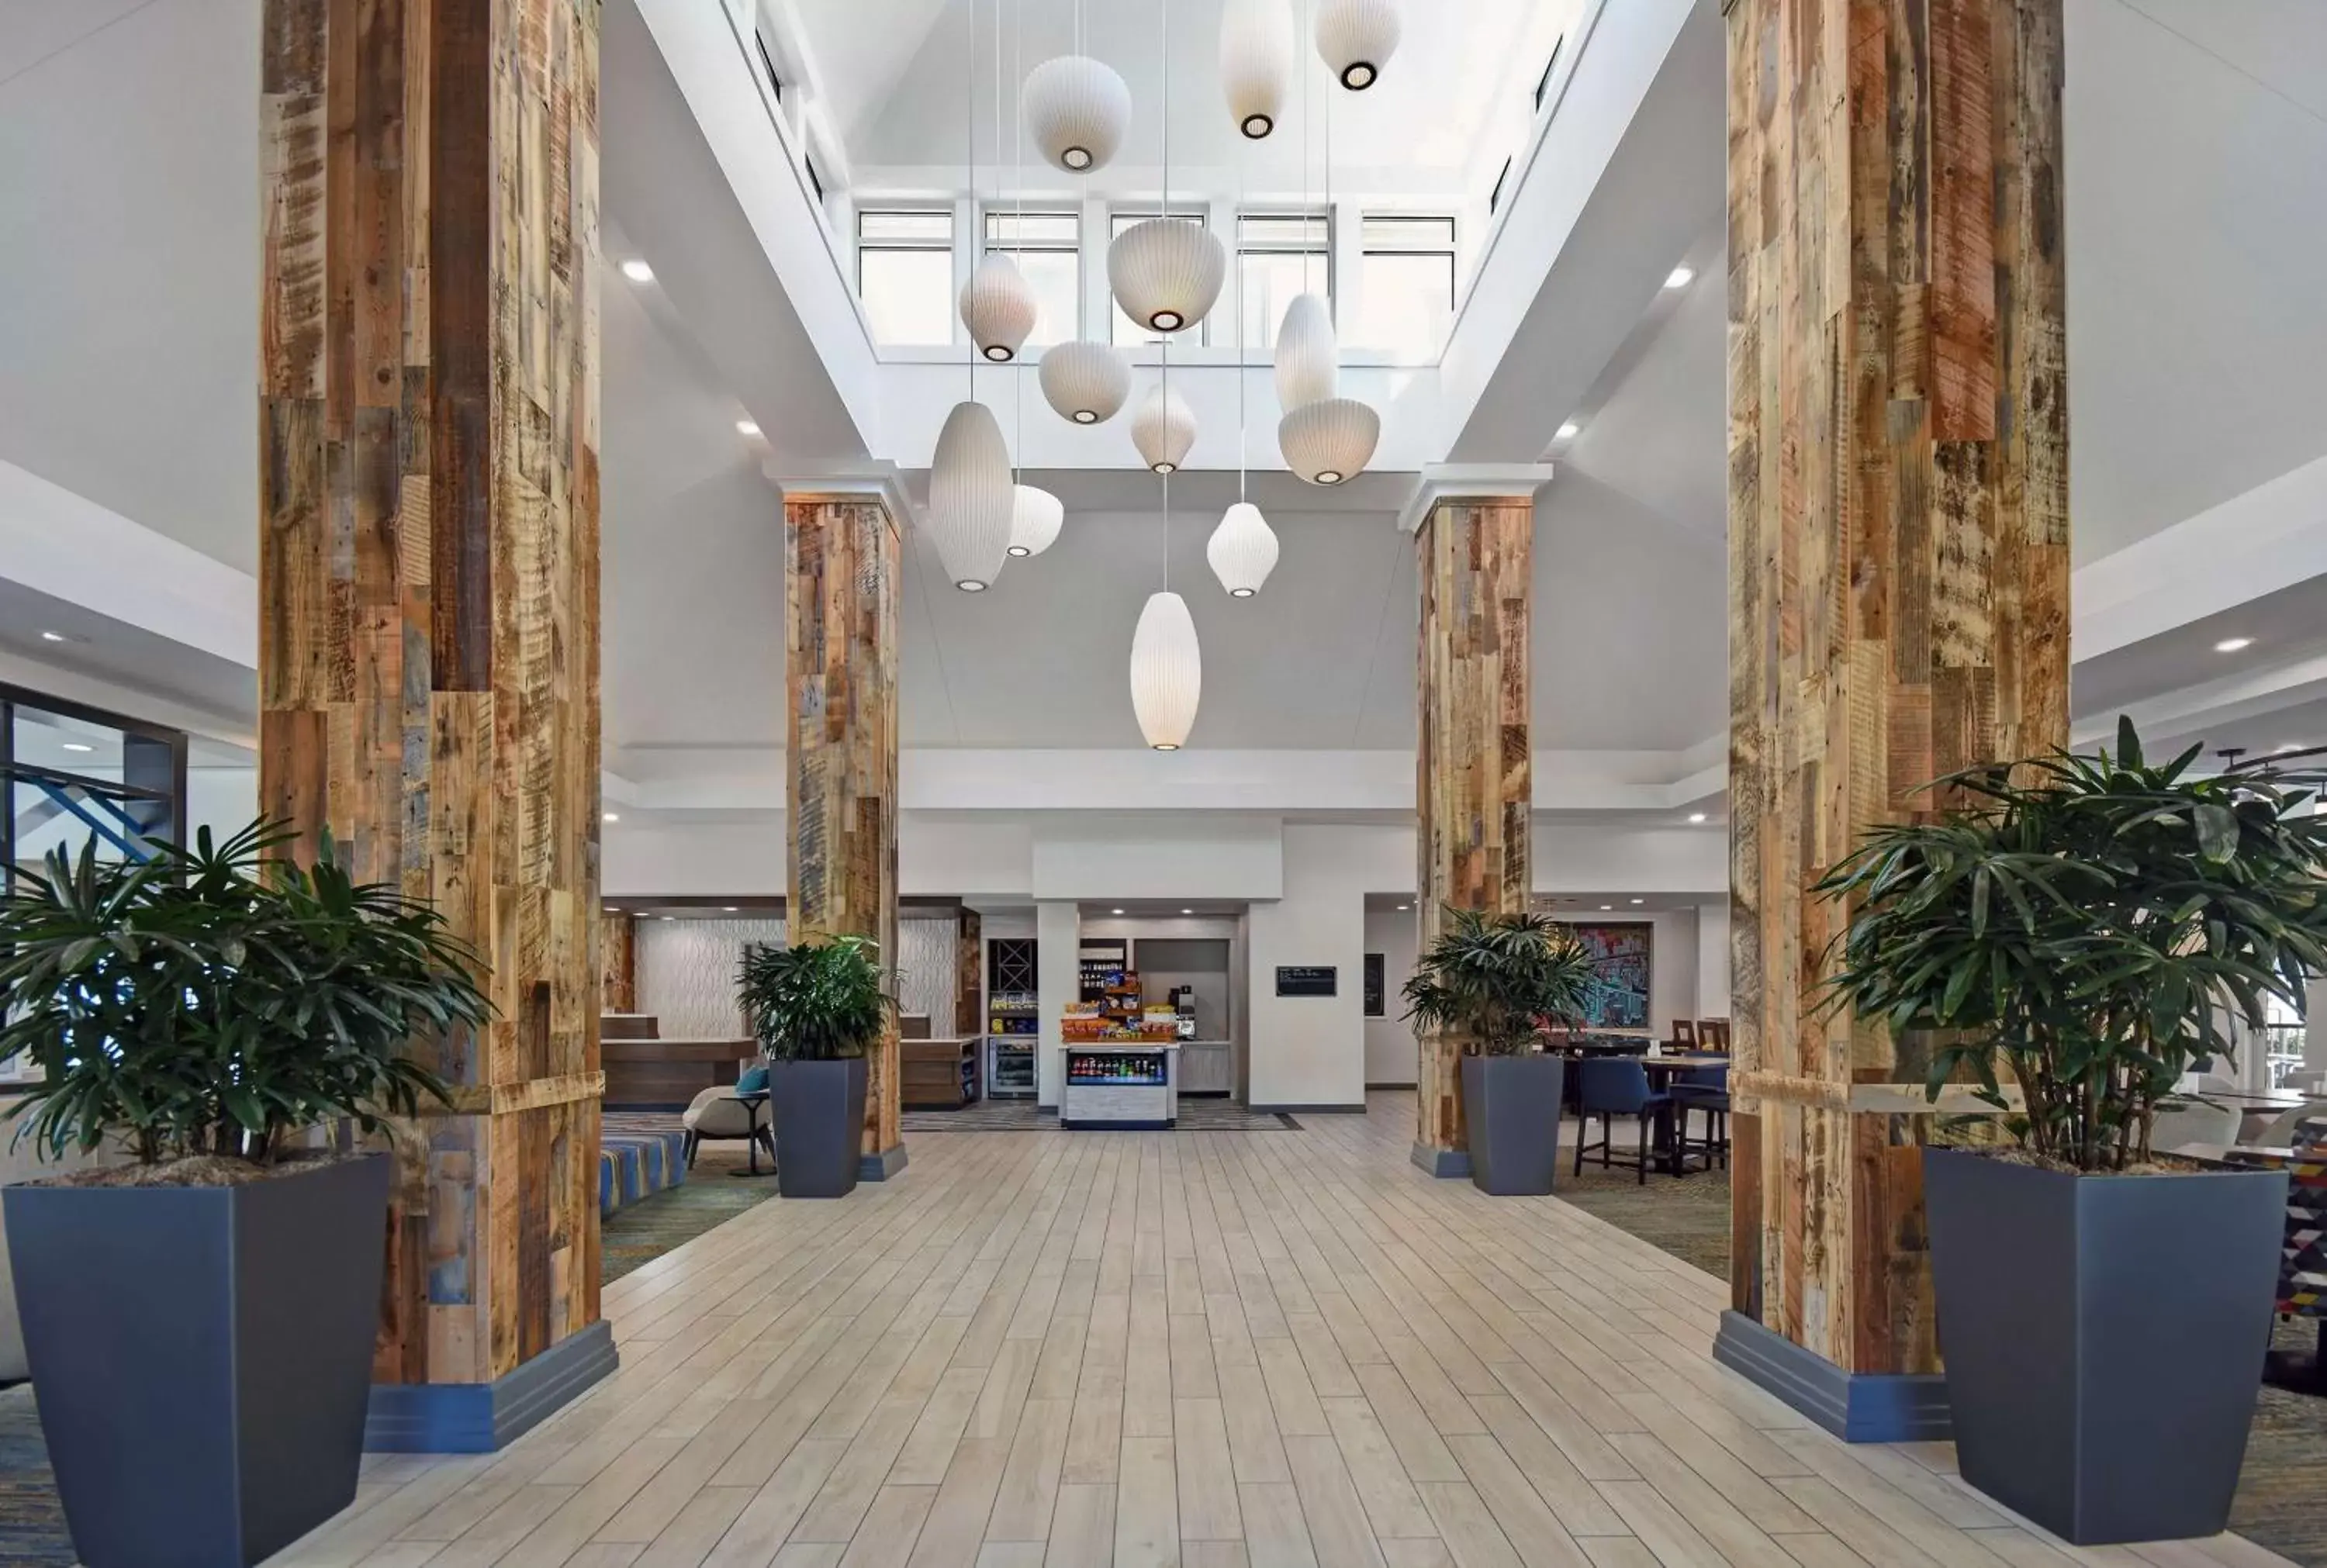 Lobby or reception, Lobby/Reception in Hilton Garden Inn Houston/Galleria Area